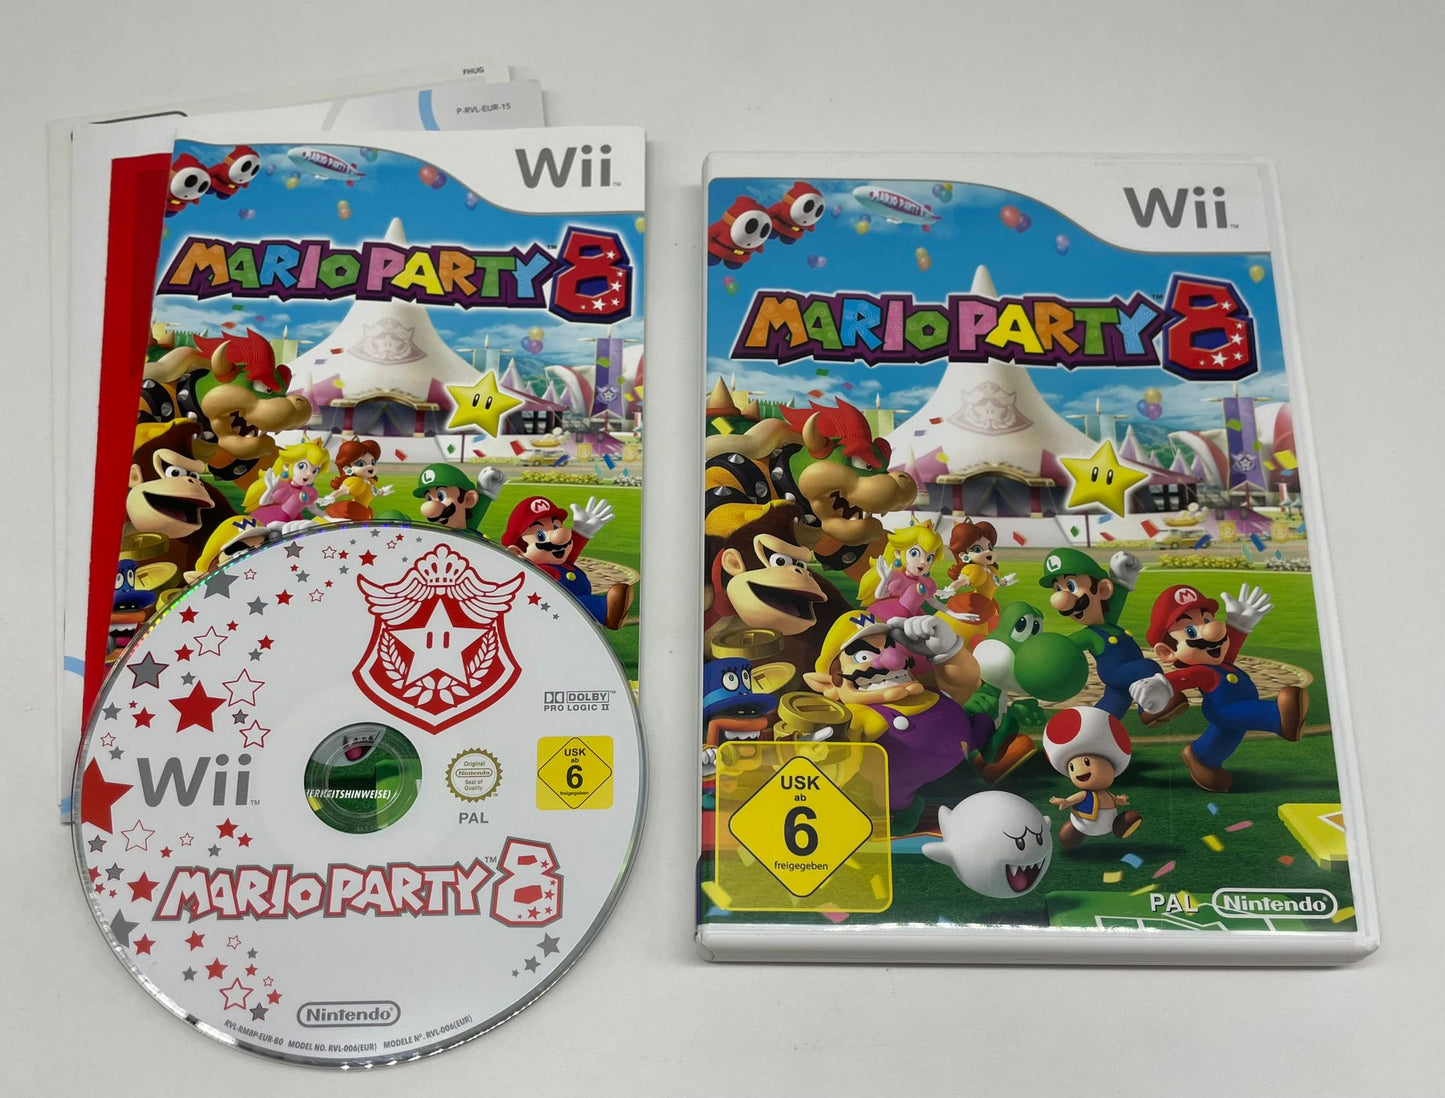 Mario Party 8 OVP